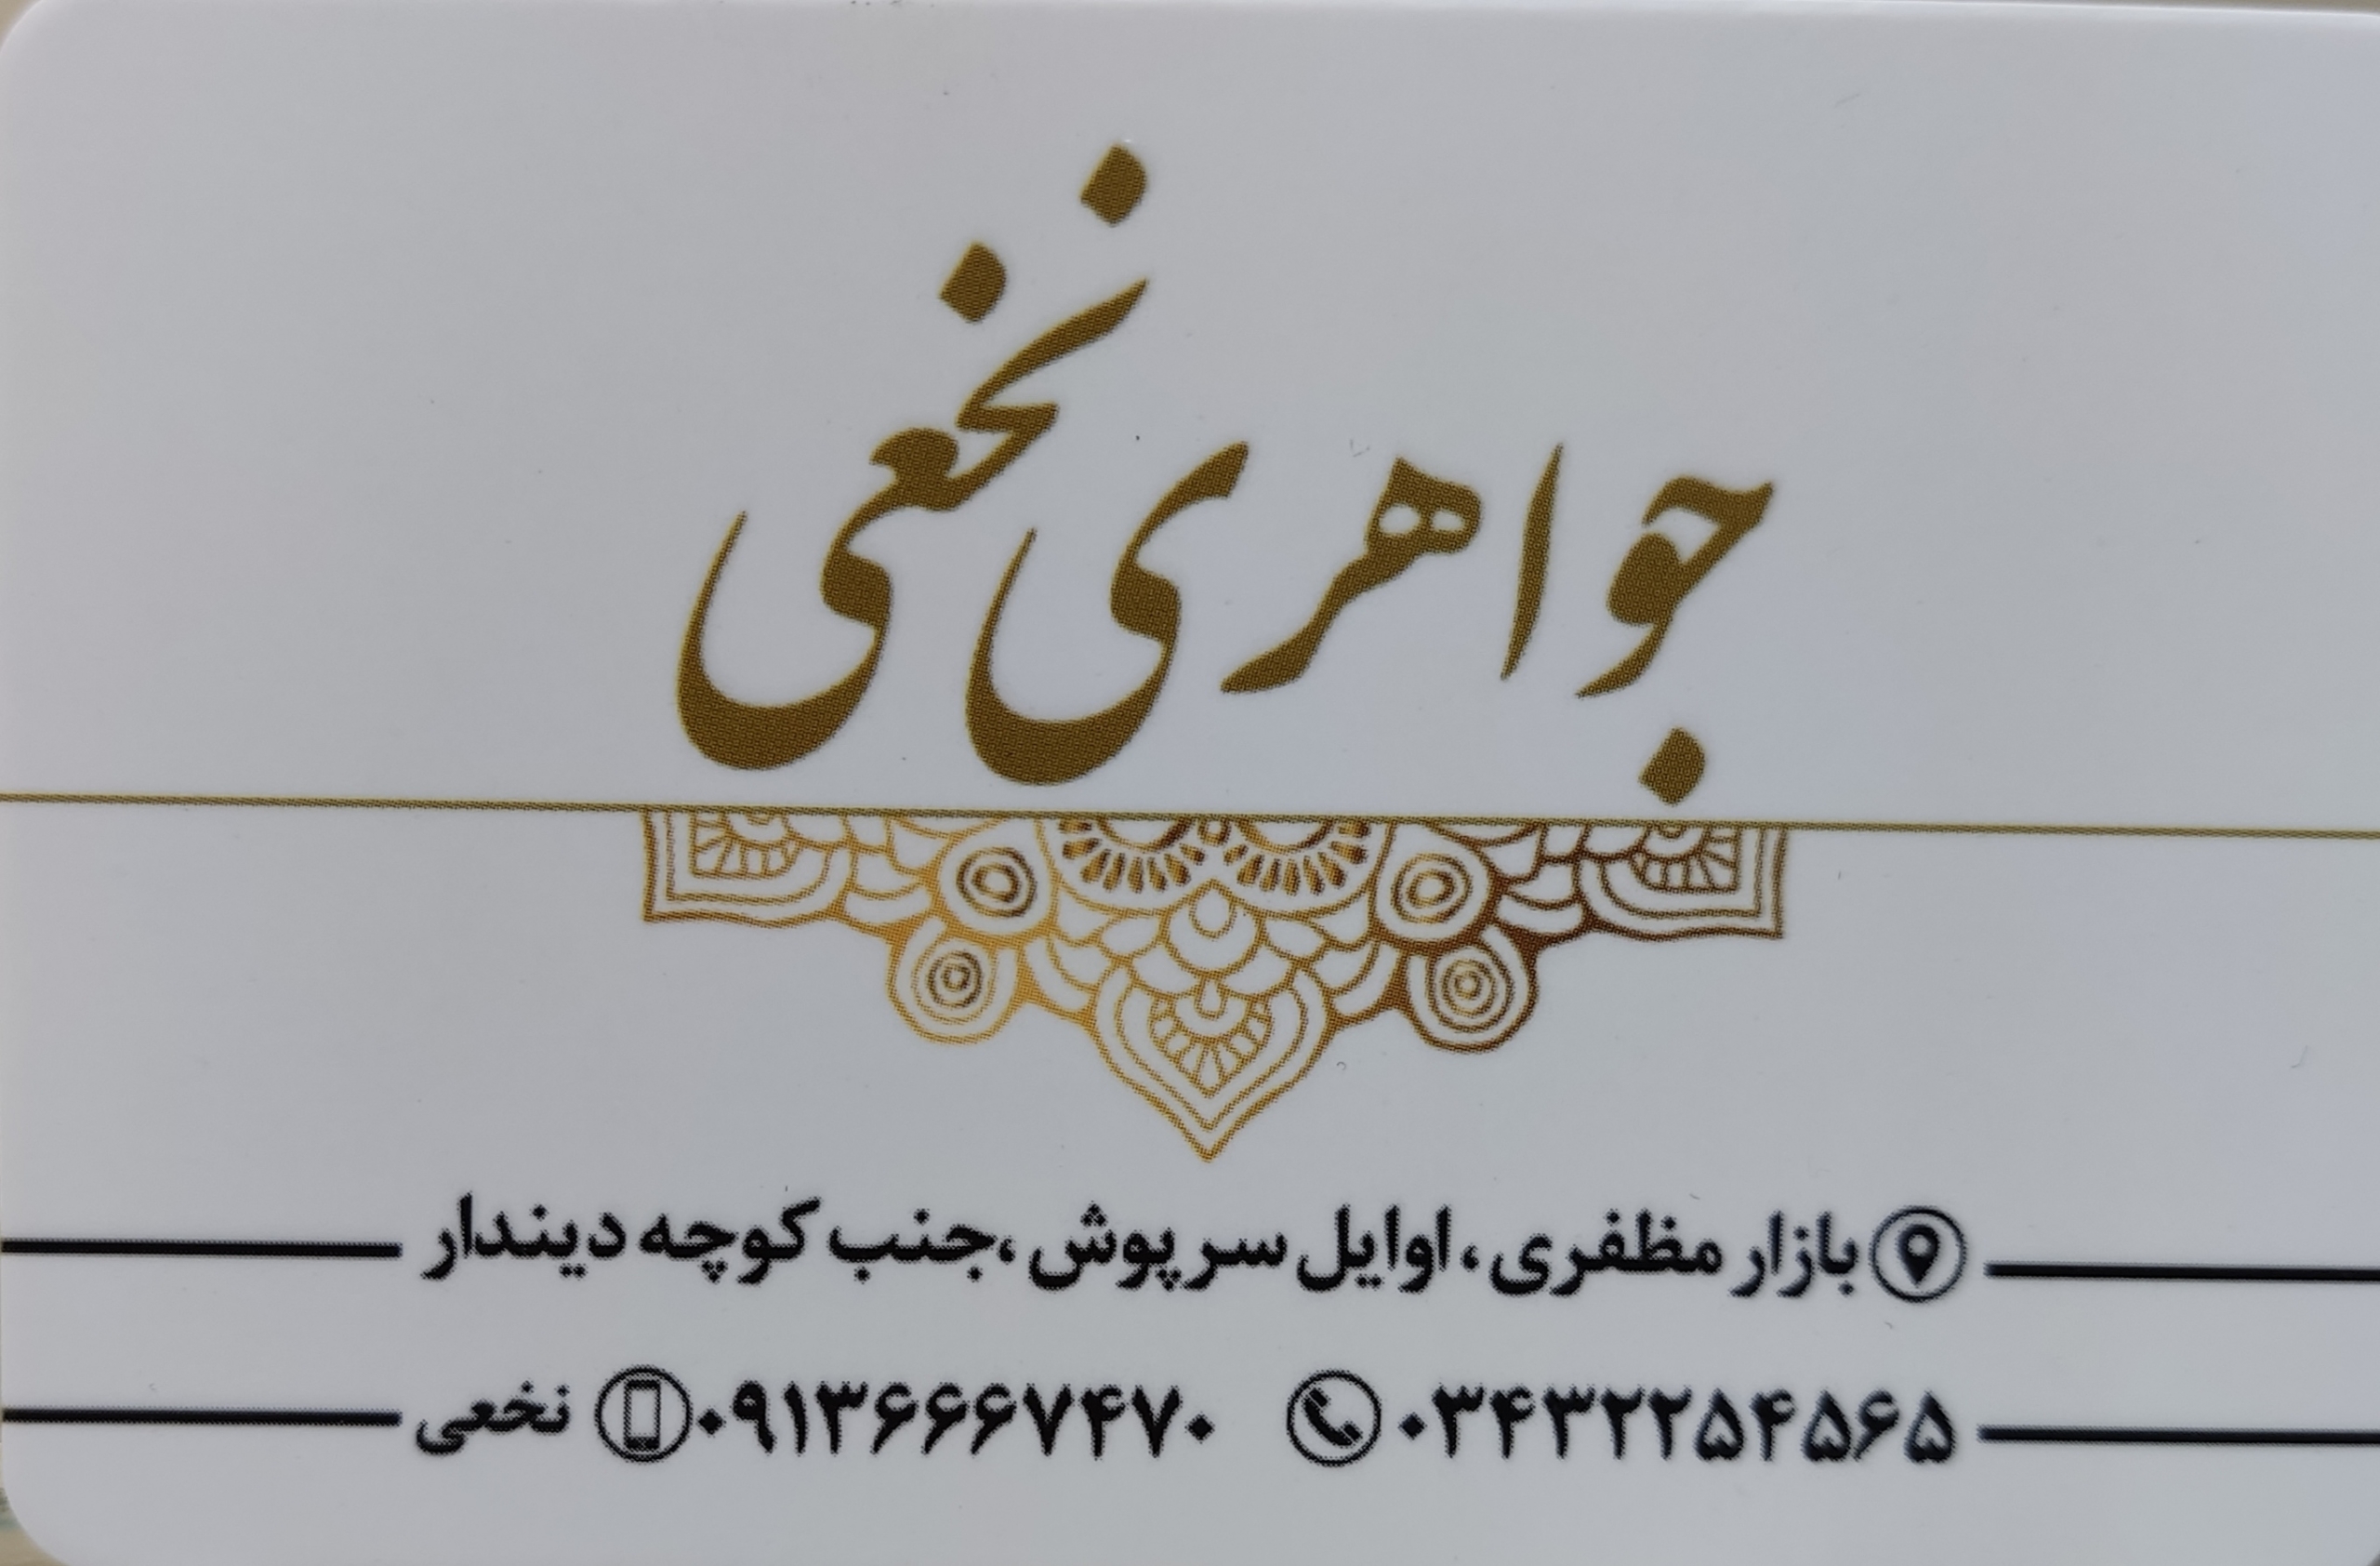 طلا فروشی نخعی در کرمان